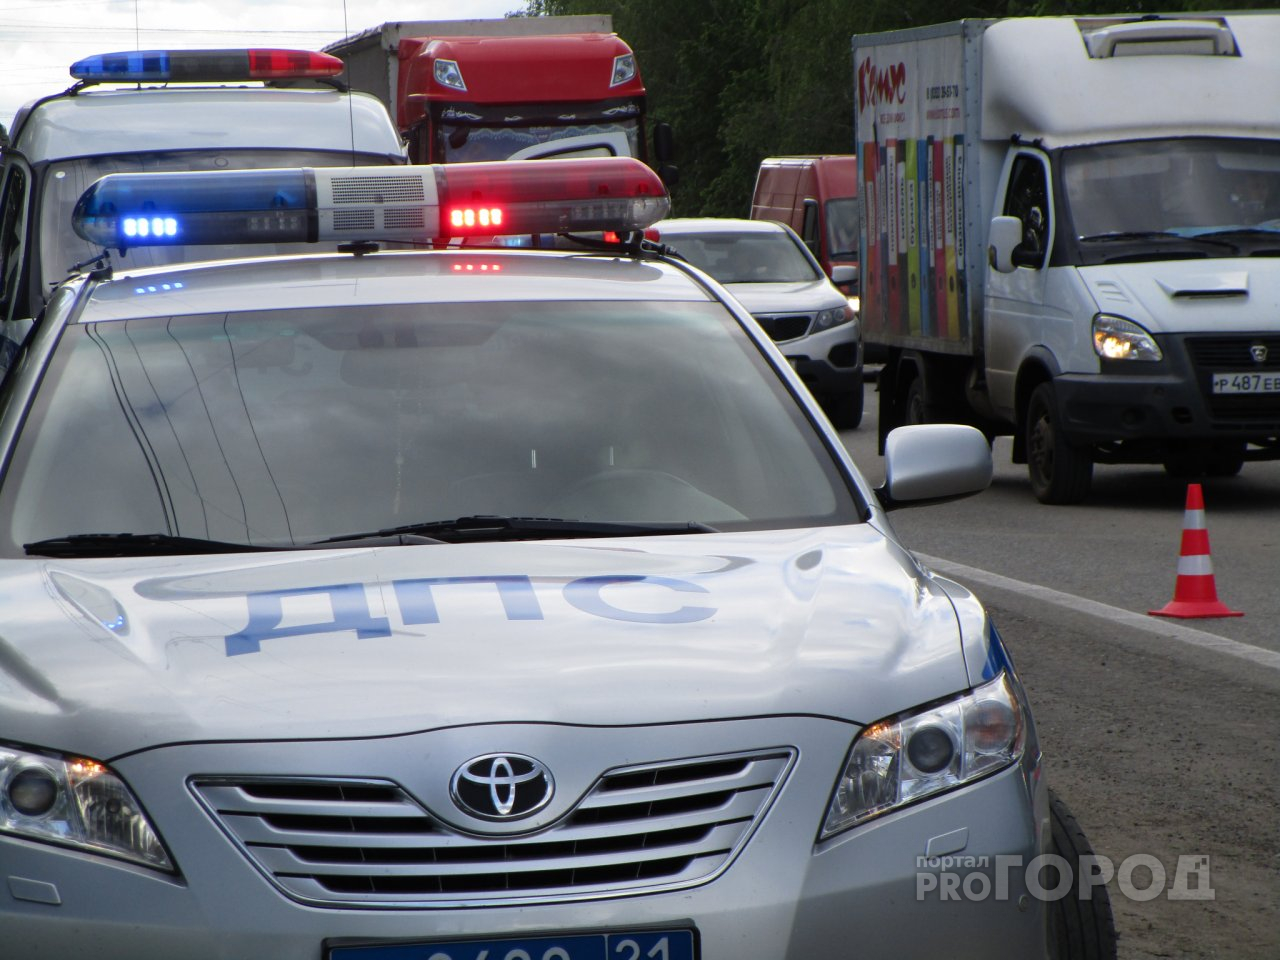 Лобовое столкновение двух ВАЗов в Йошкар-Оле закончилось разбросанными по дороге машинами